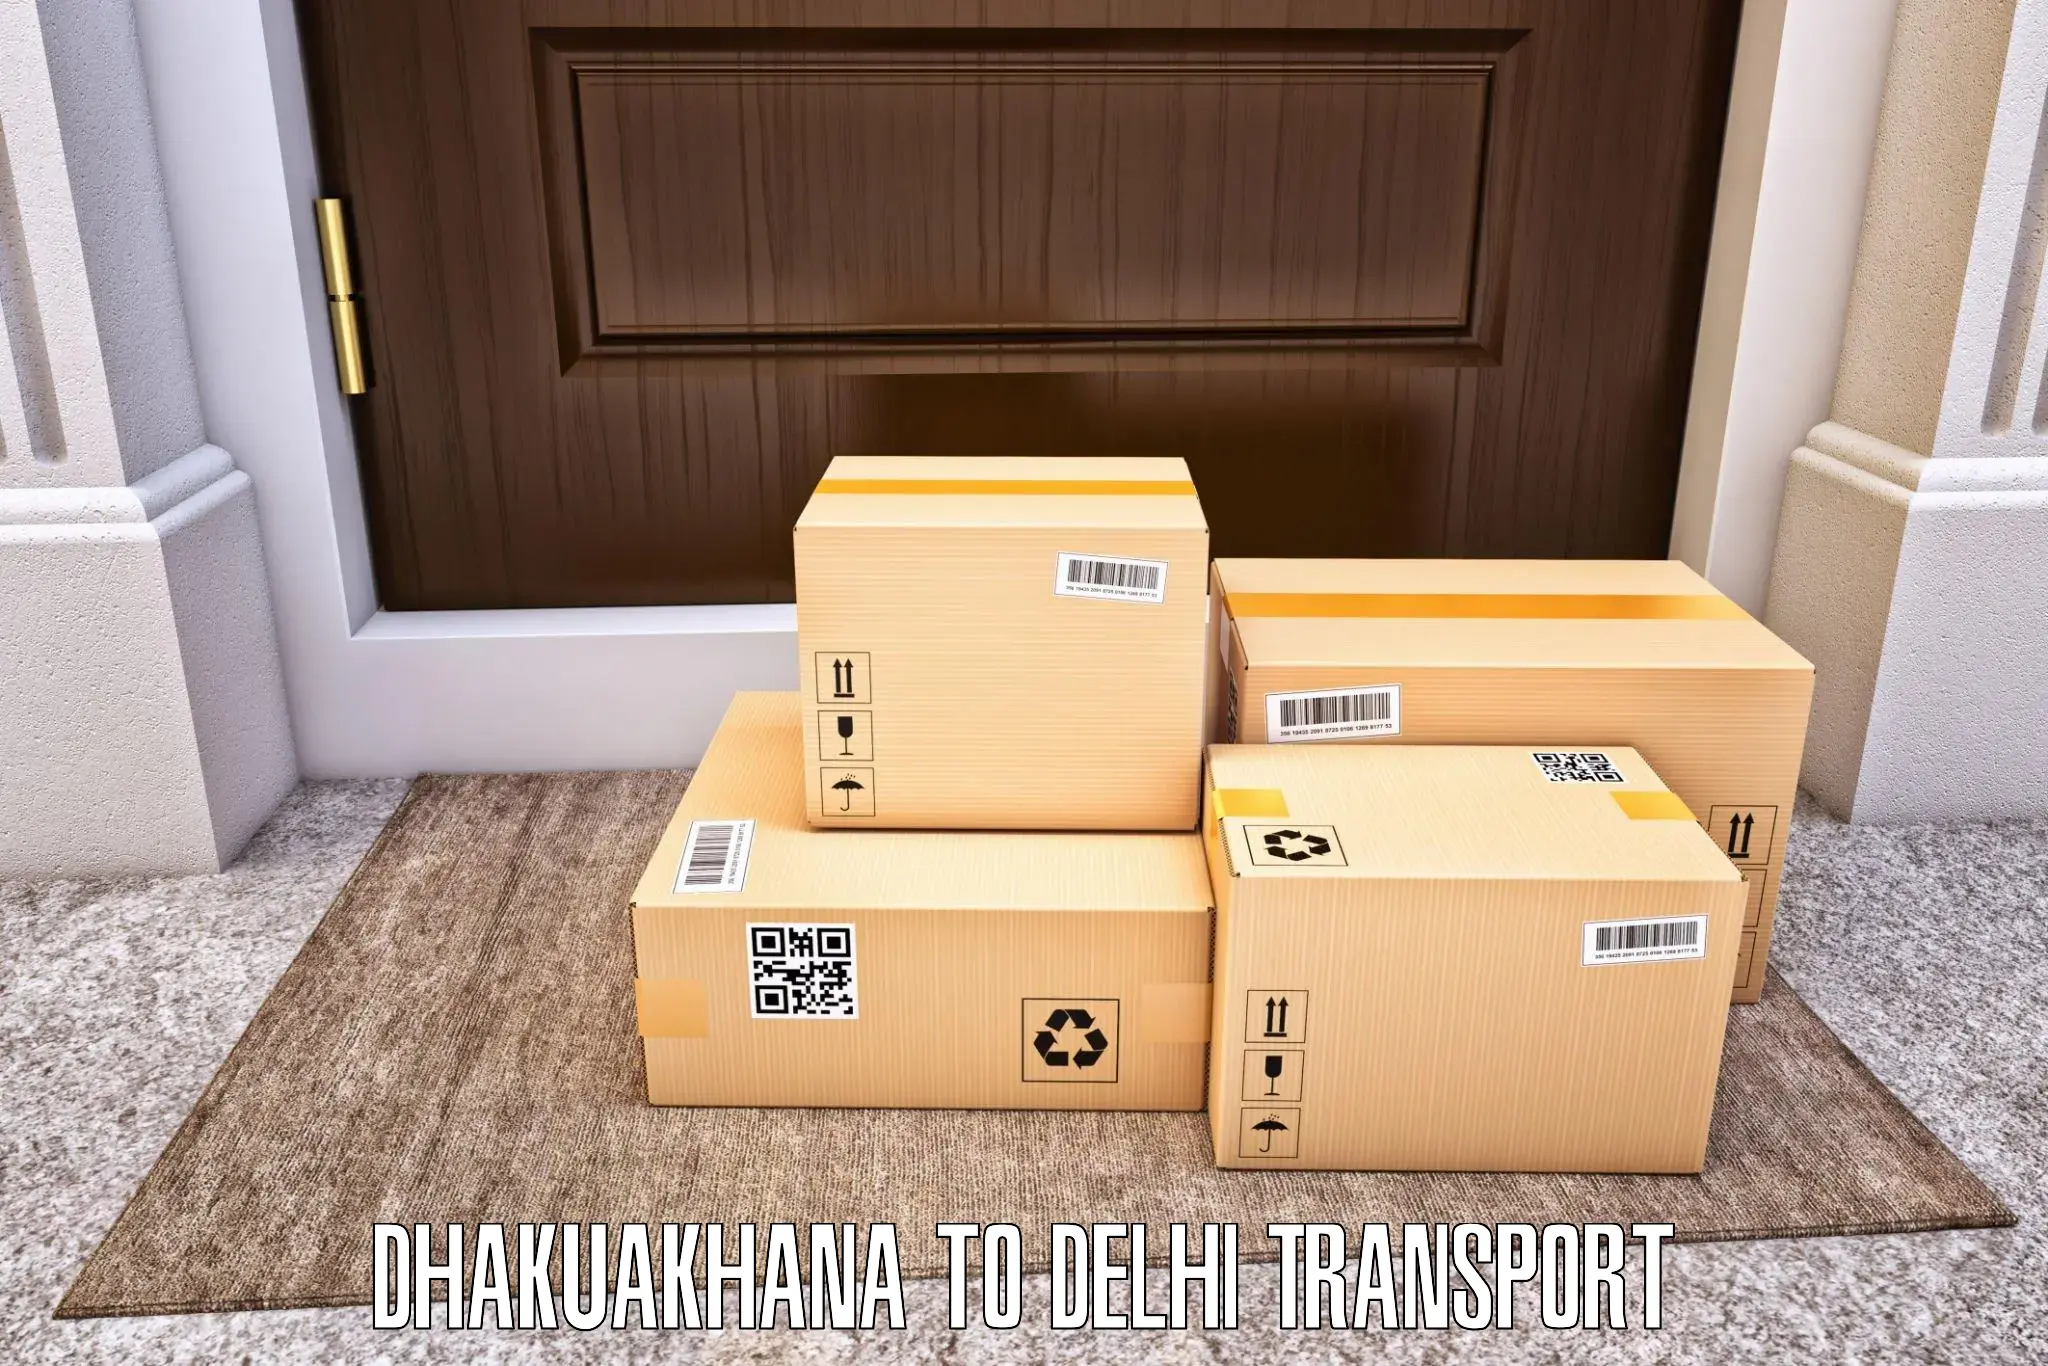 Shipping services Dhakuakhana to Jamia Hamdard New Delhi